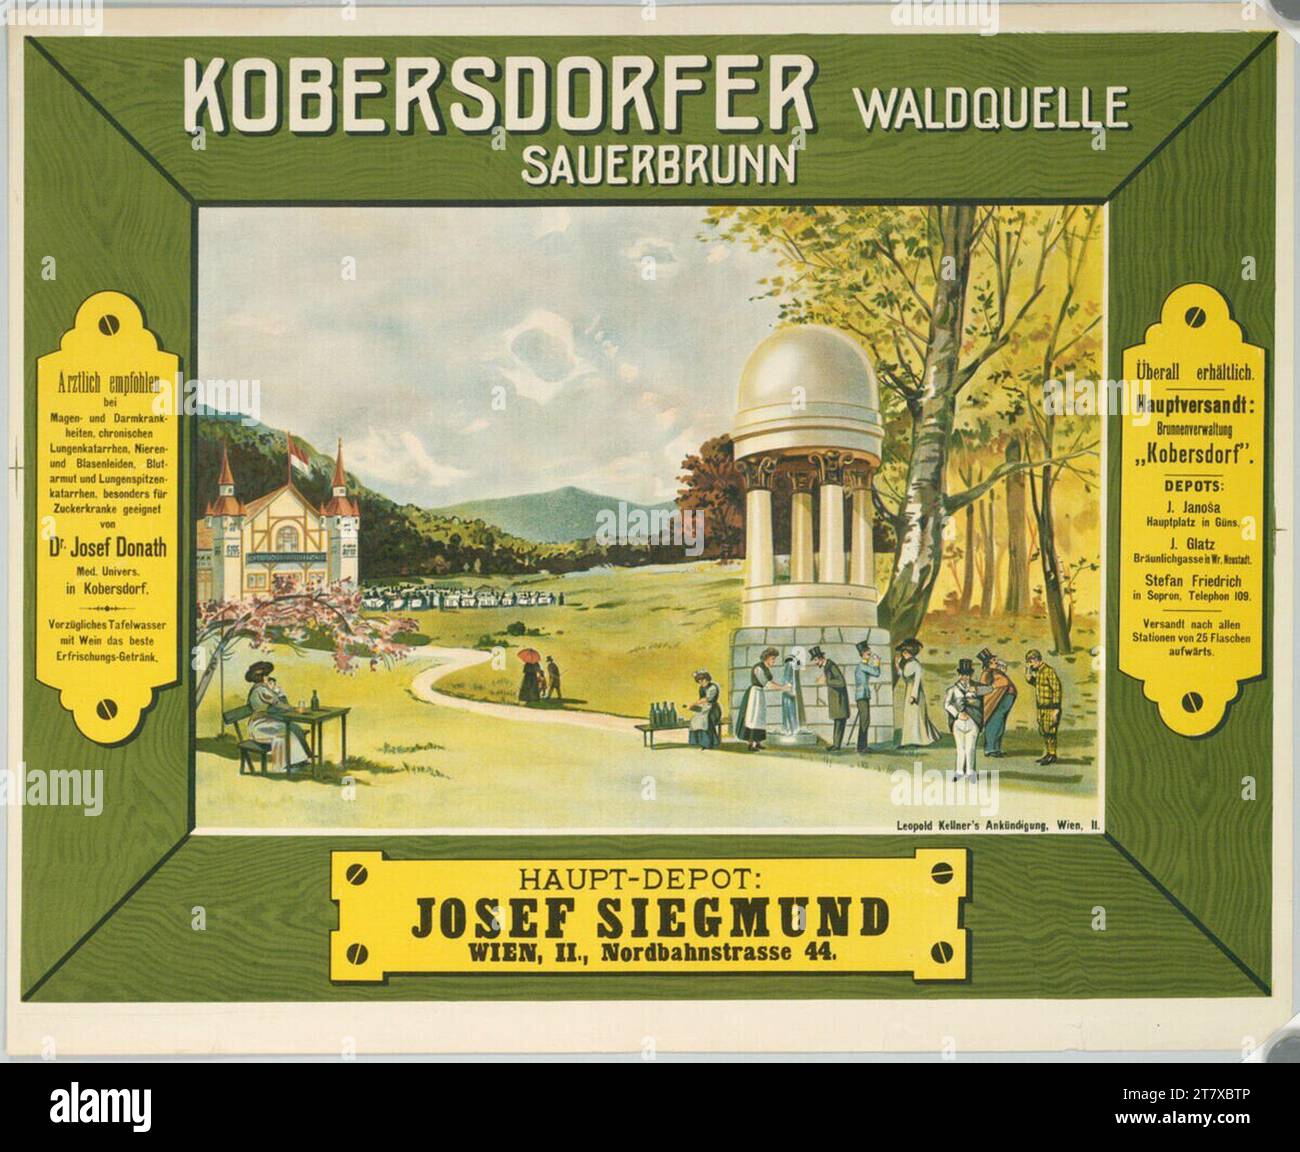 Anonym Kobersdorfer Waldquelle Sauerbrunn; deposito principale: Josef Siegmund, Vienna, II, Nordbahnstrasse 44 .. Colore intorno a 1900 Foto Stock